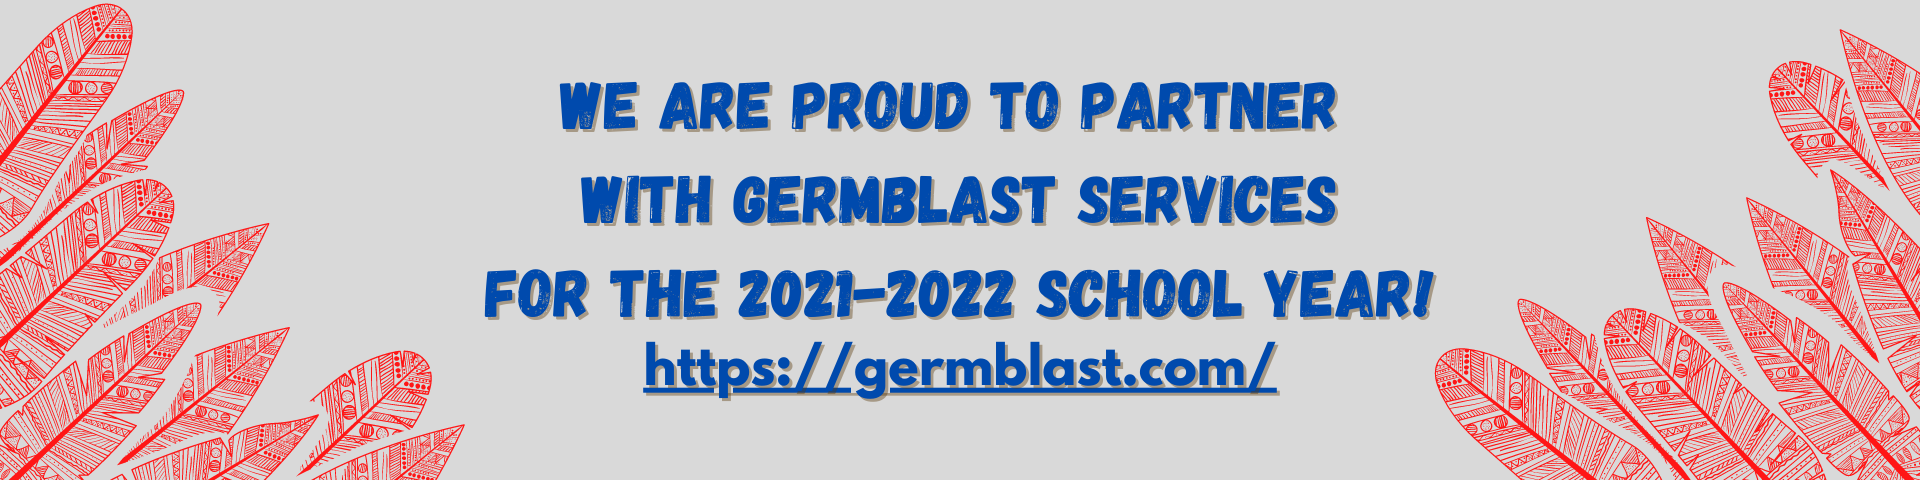 Germblast21-22